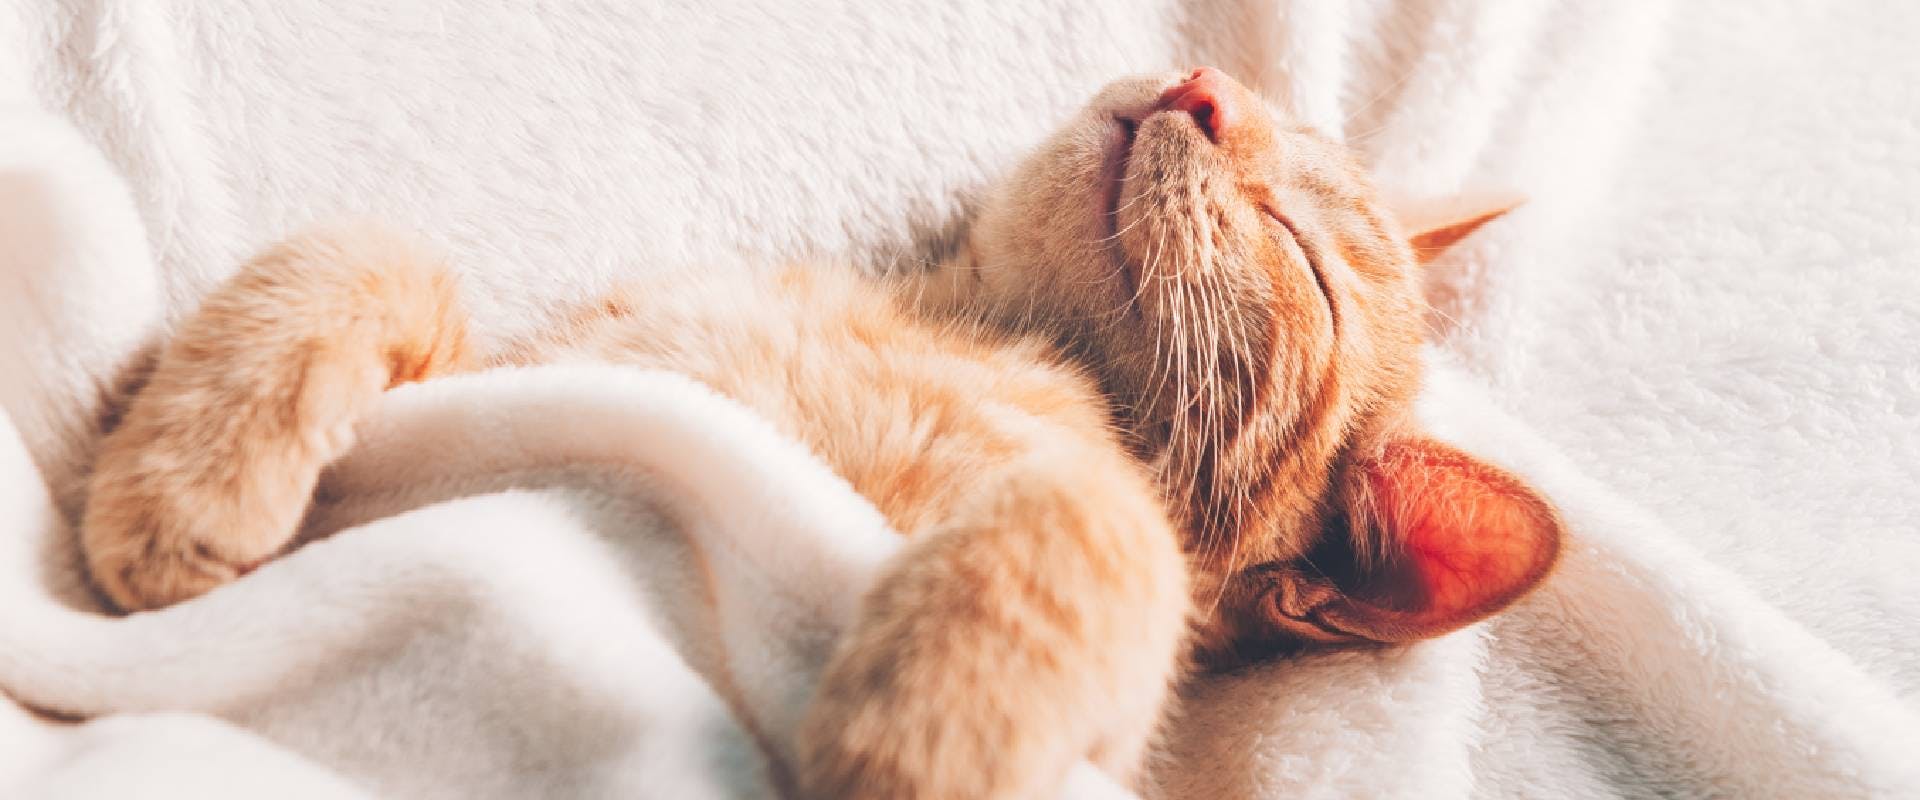 Ginger kitten sleeping on their back in a cream blanket